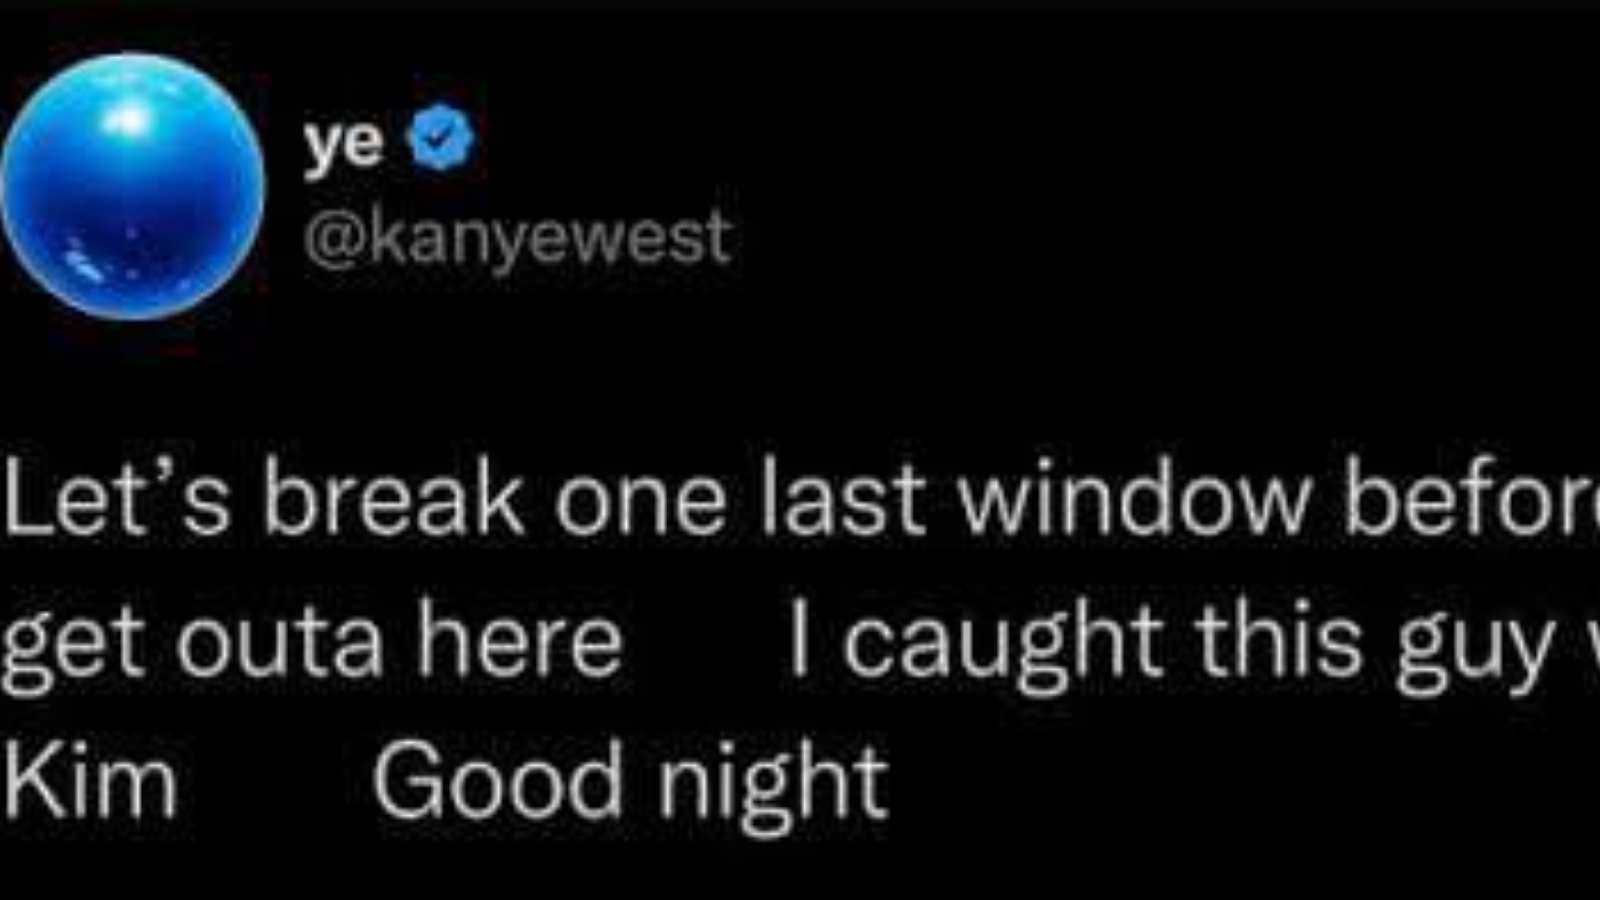 Kanye West's tweet